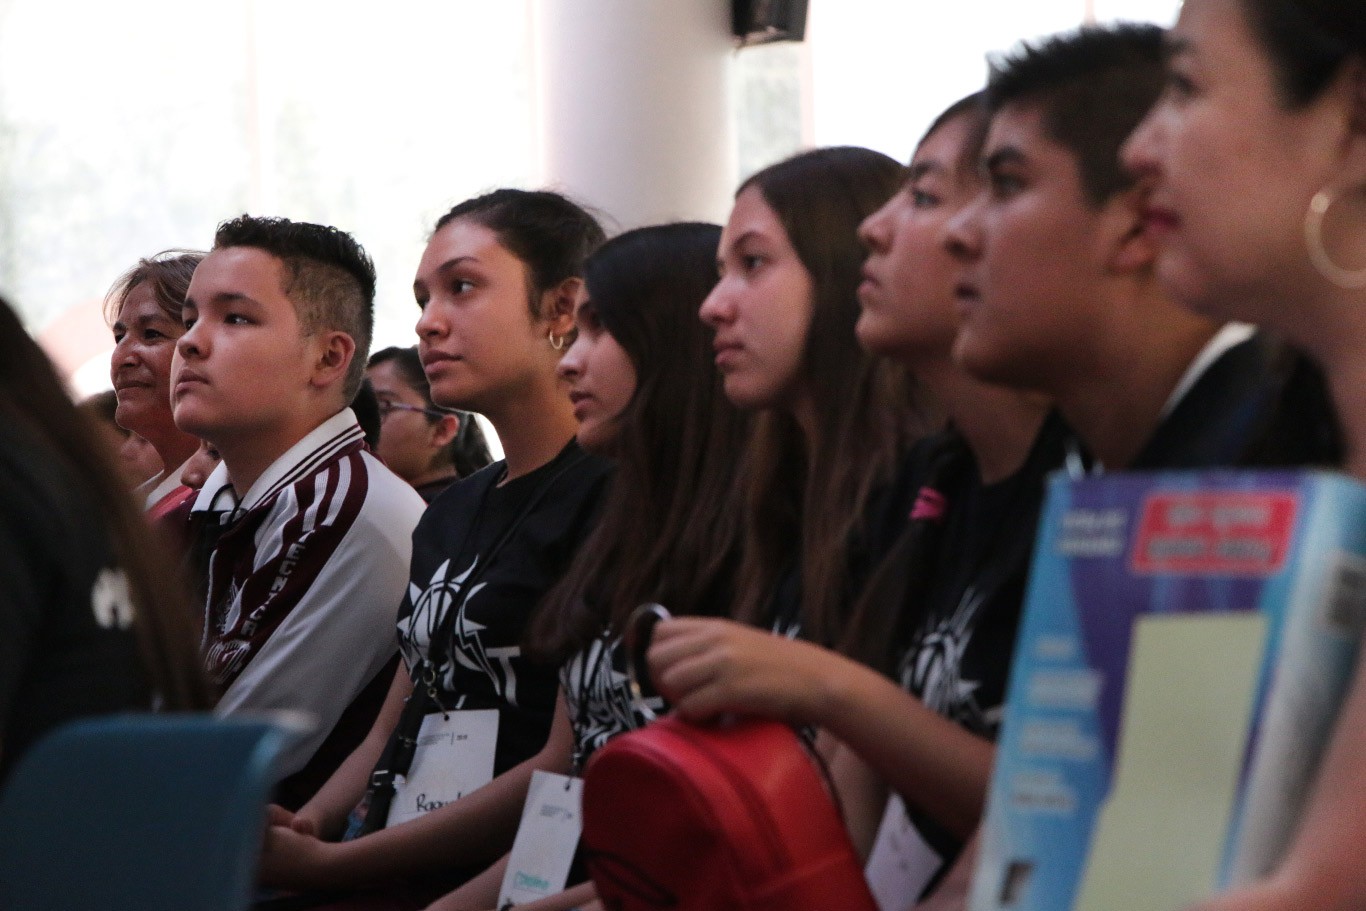 Congreso CELT en zacatecas para estudiantes de zacatecas con Cevic